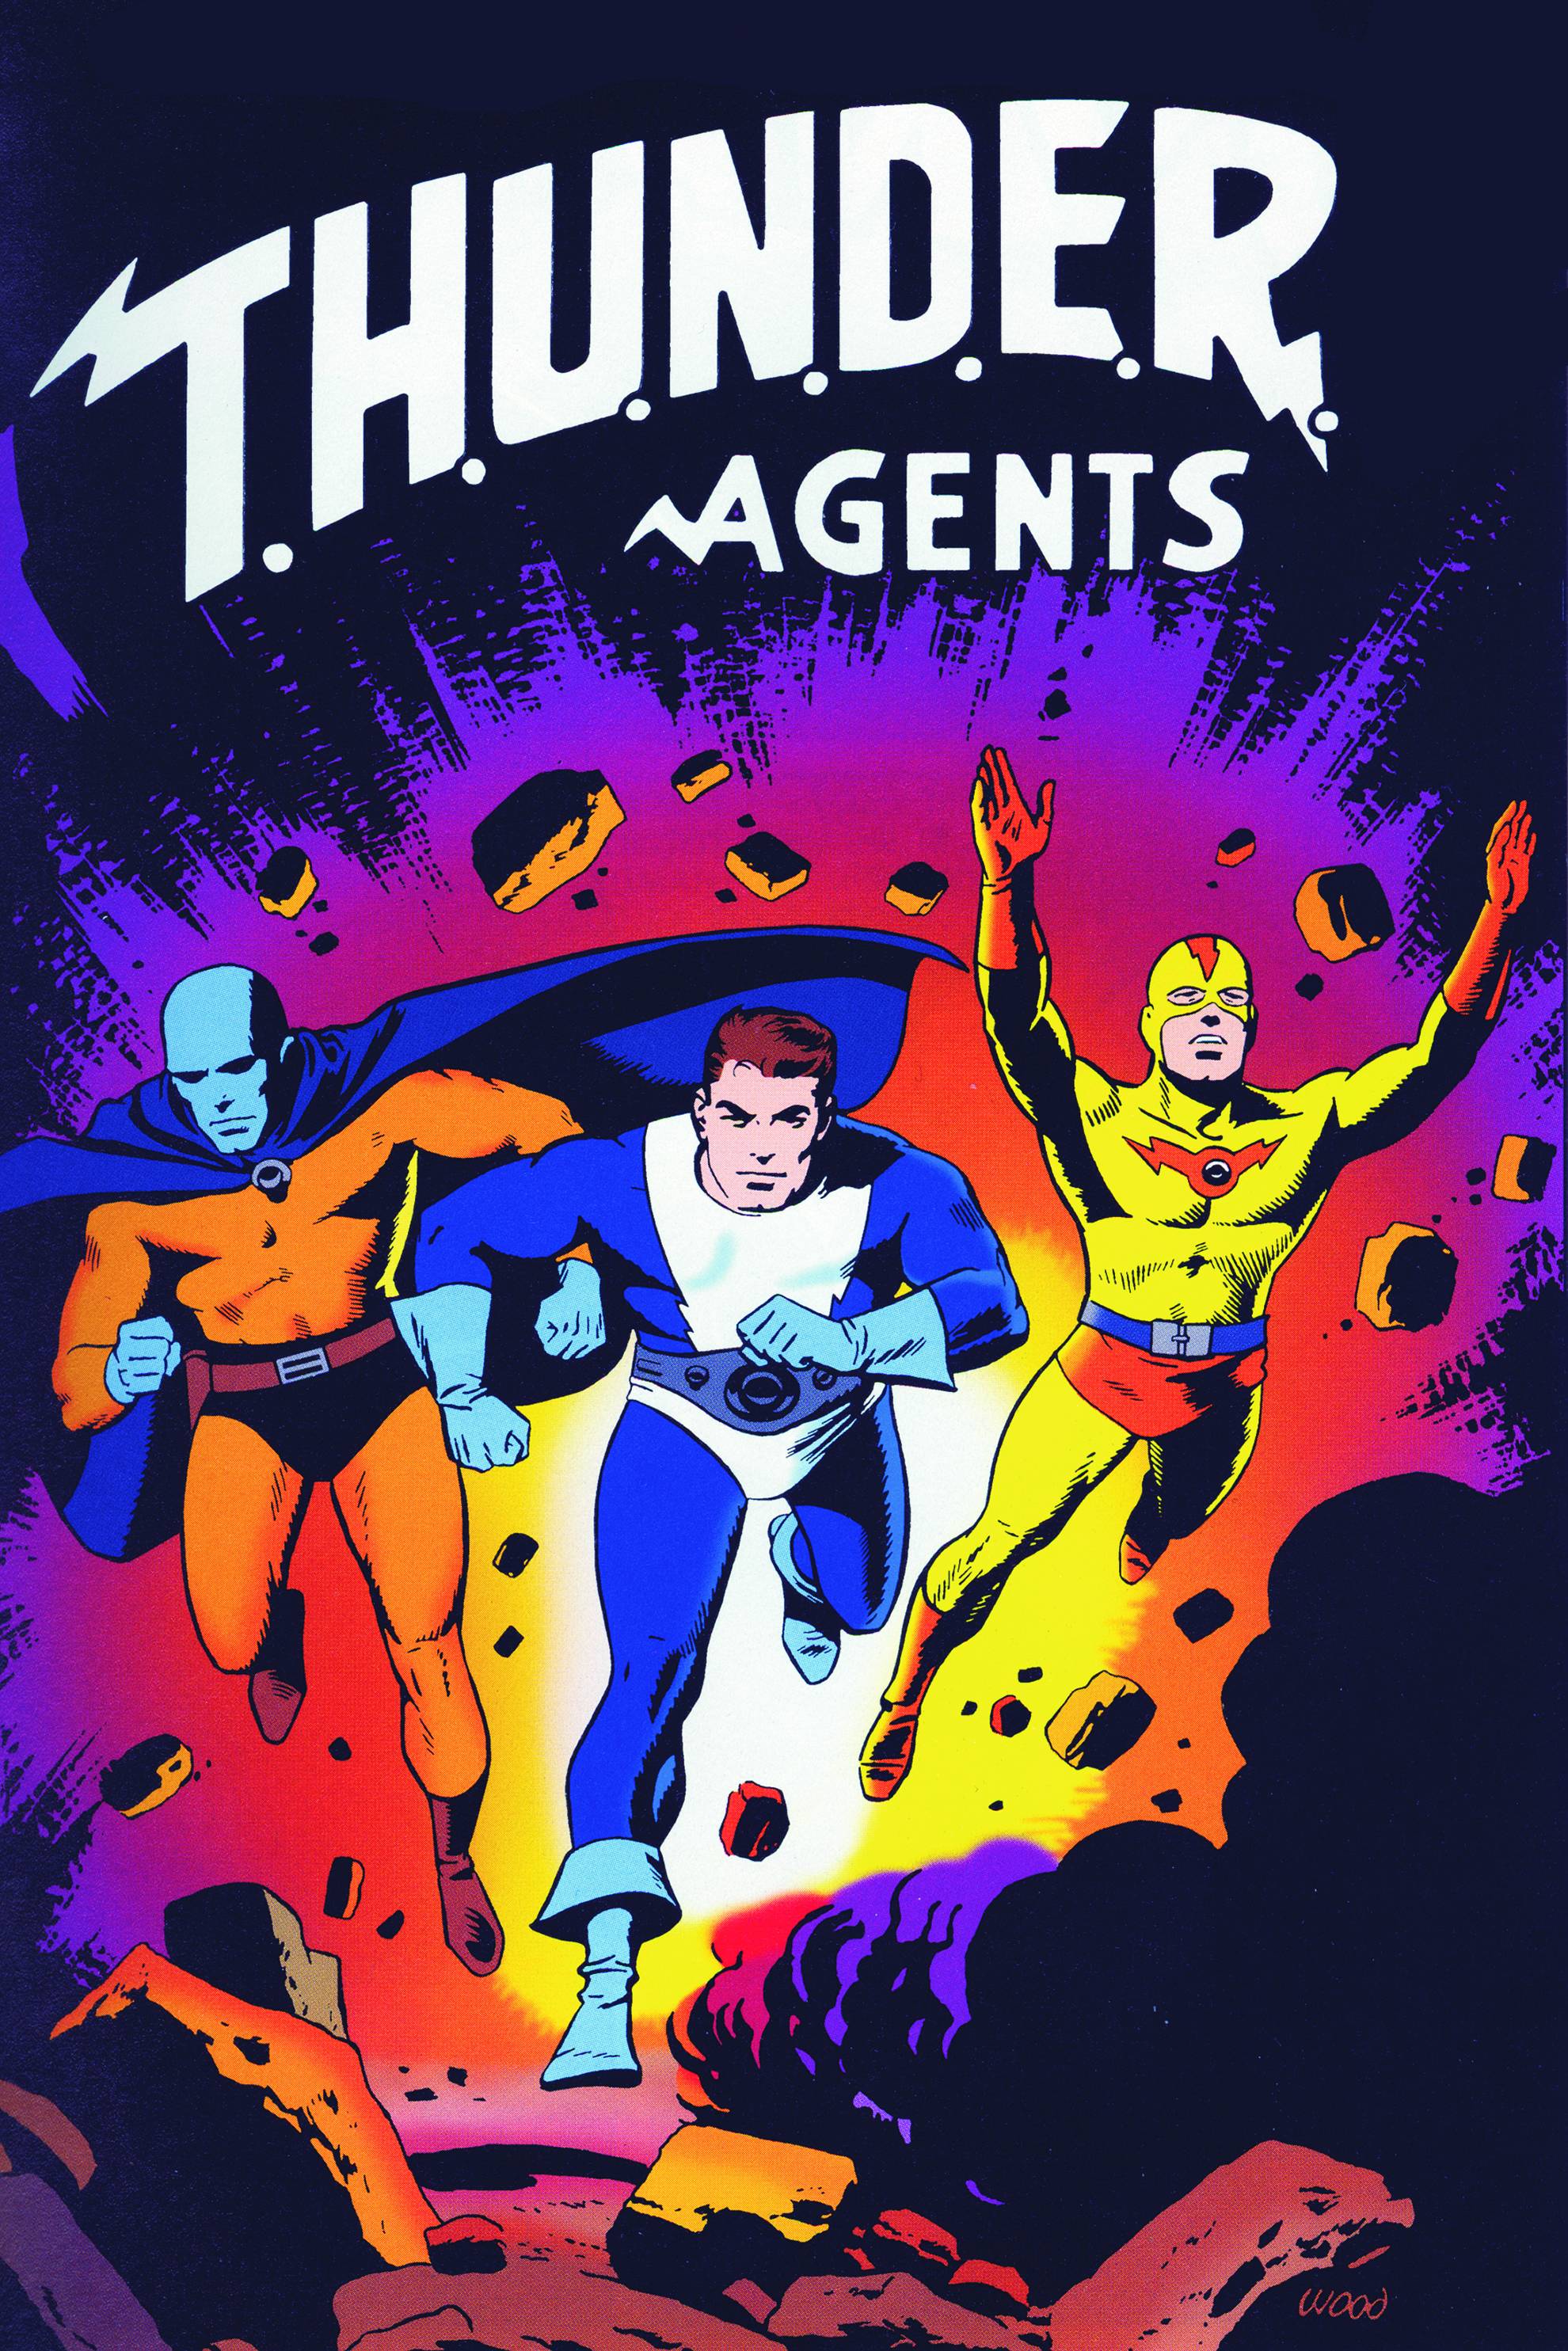 DC Comics Presents Thunder Agents #1